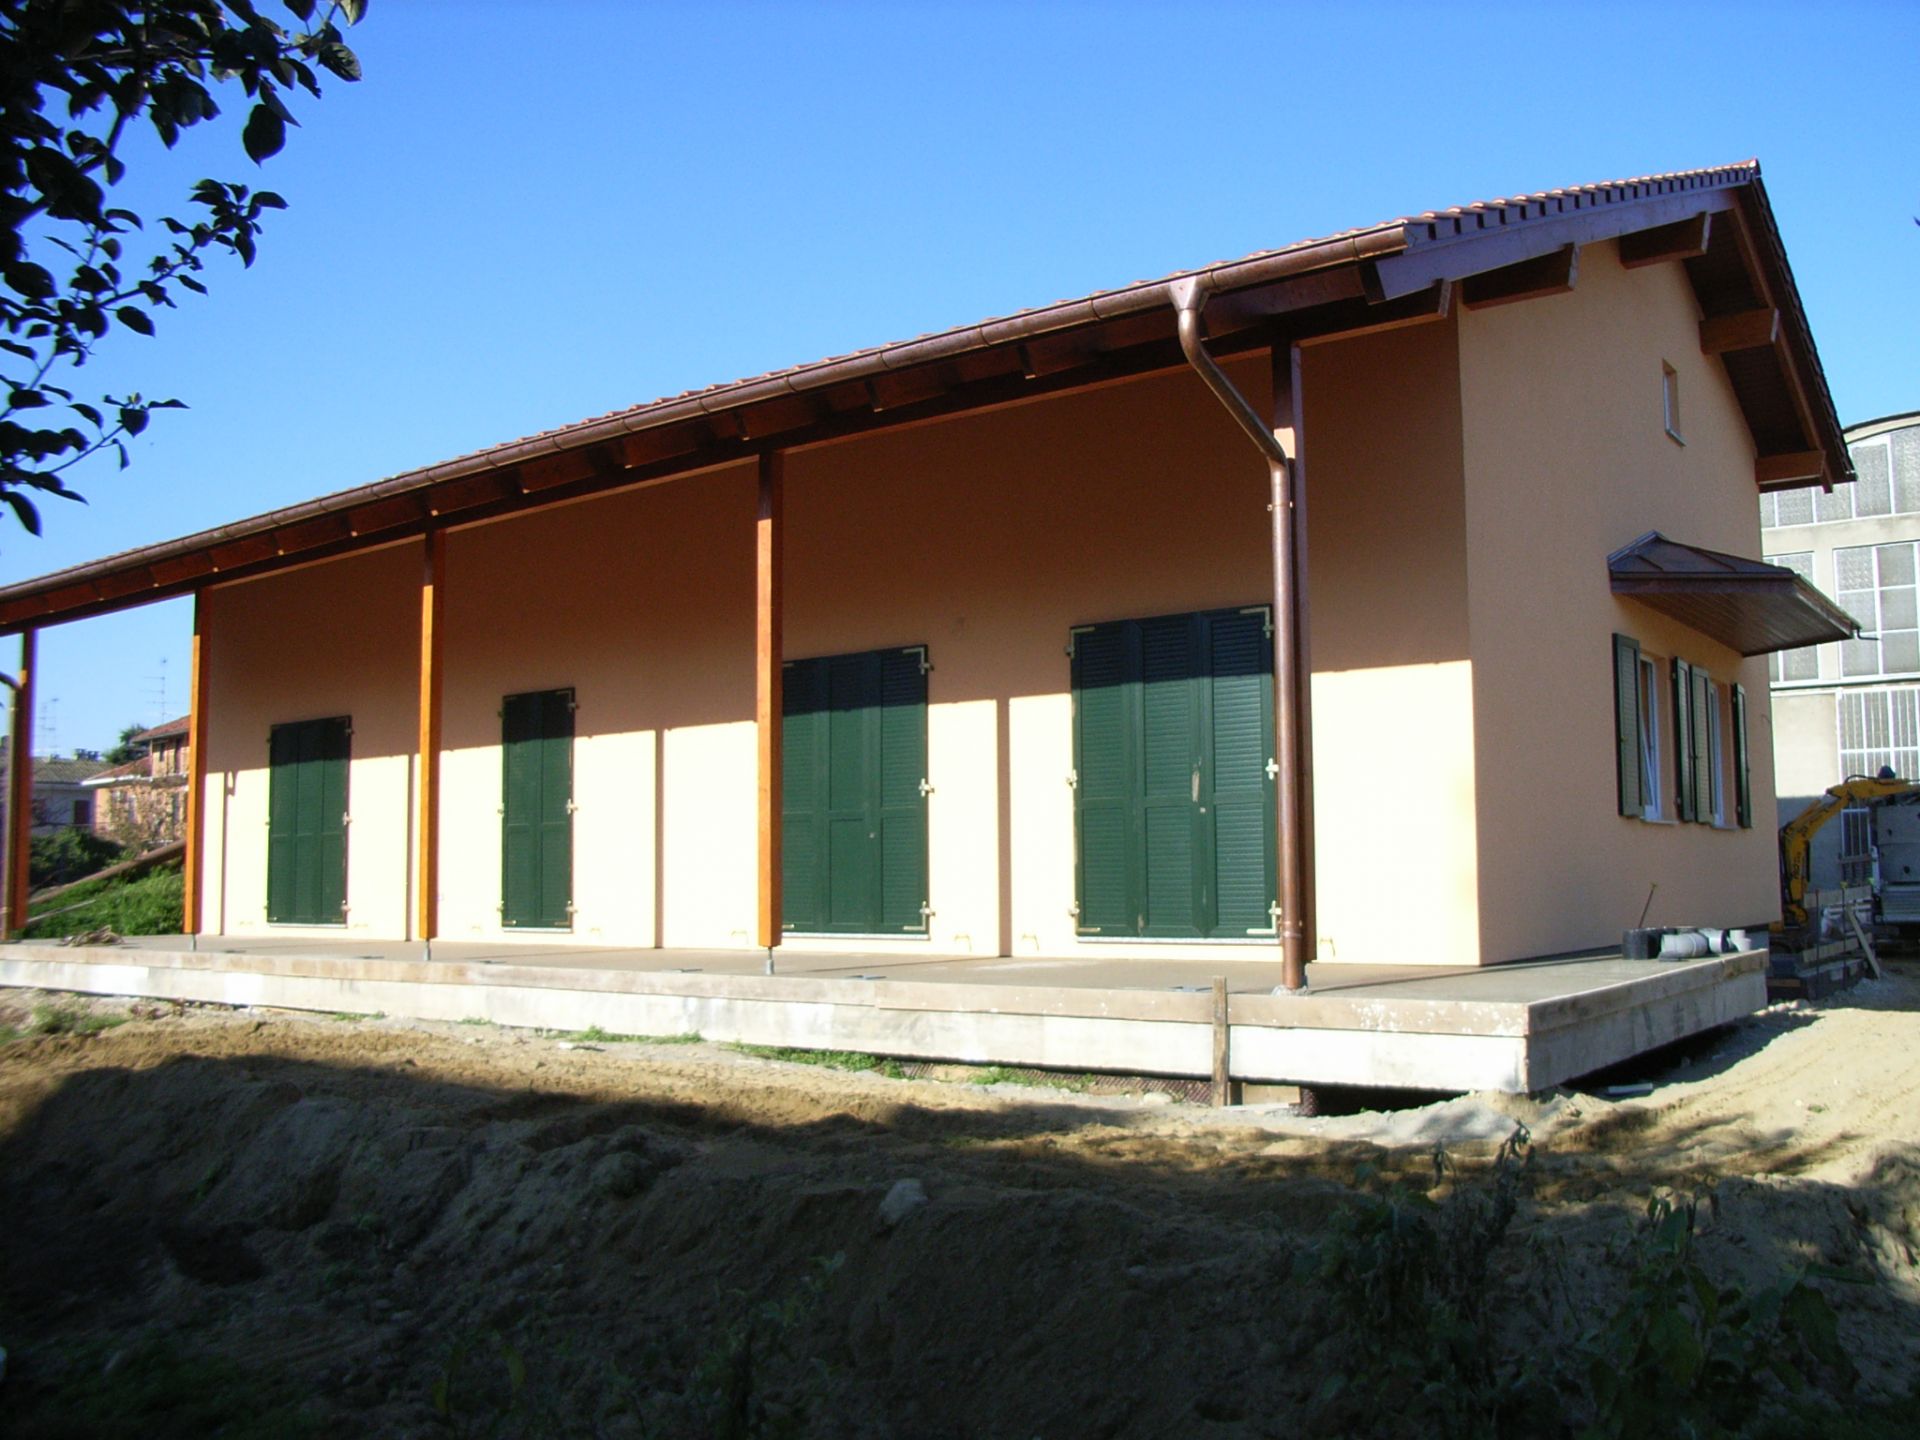 Villetta privata prefabbricata in legno arch lino ferro for Casa prefabbricata in legno su terreno agricolo